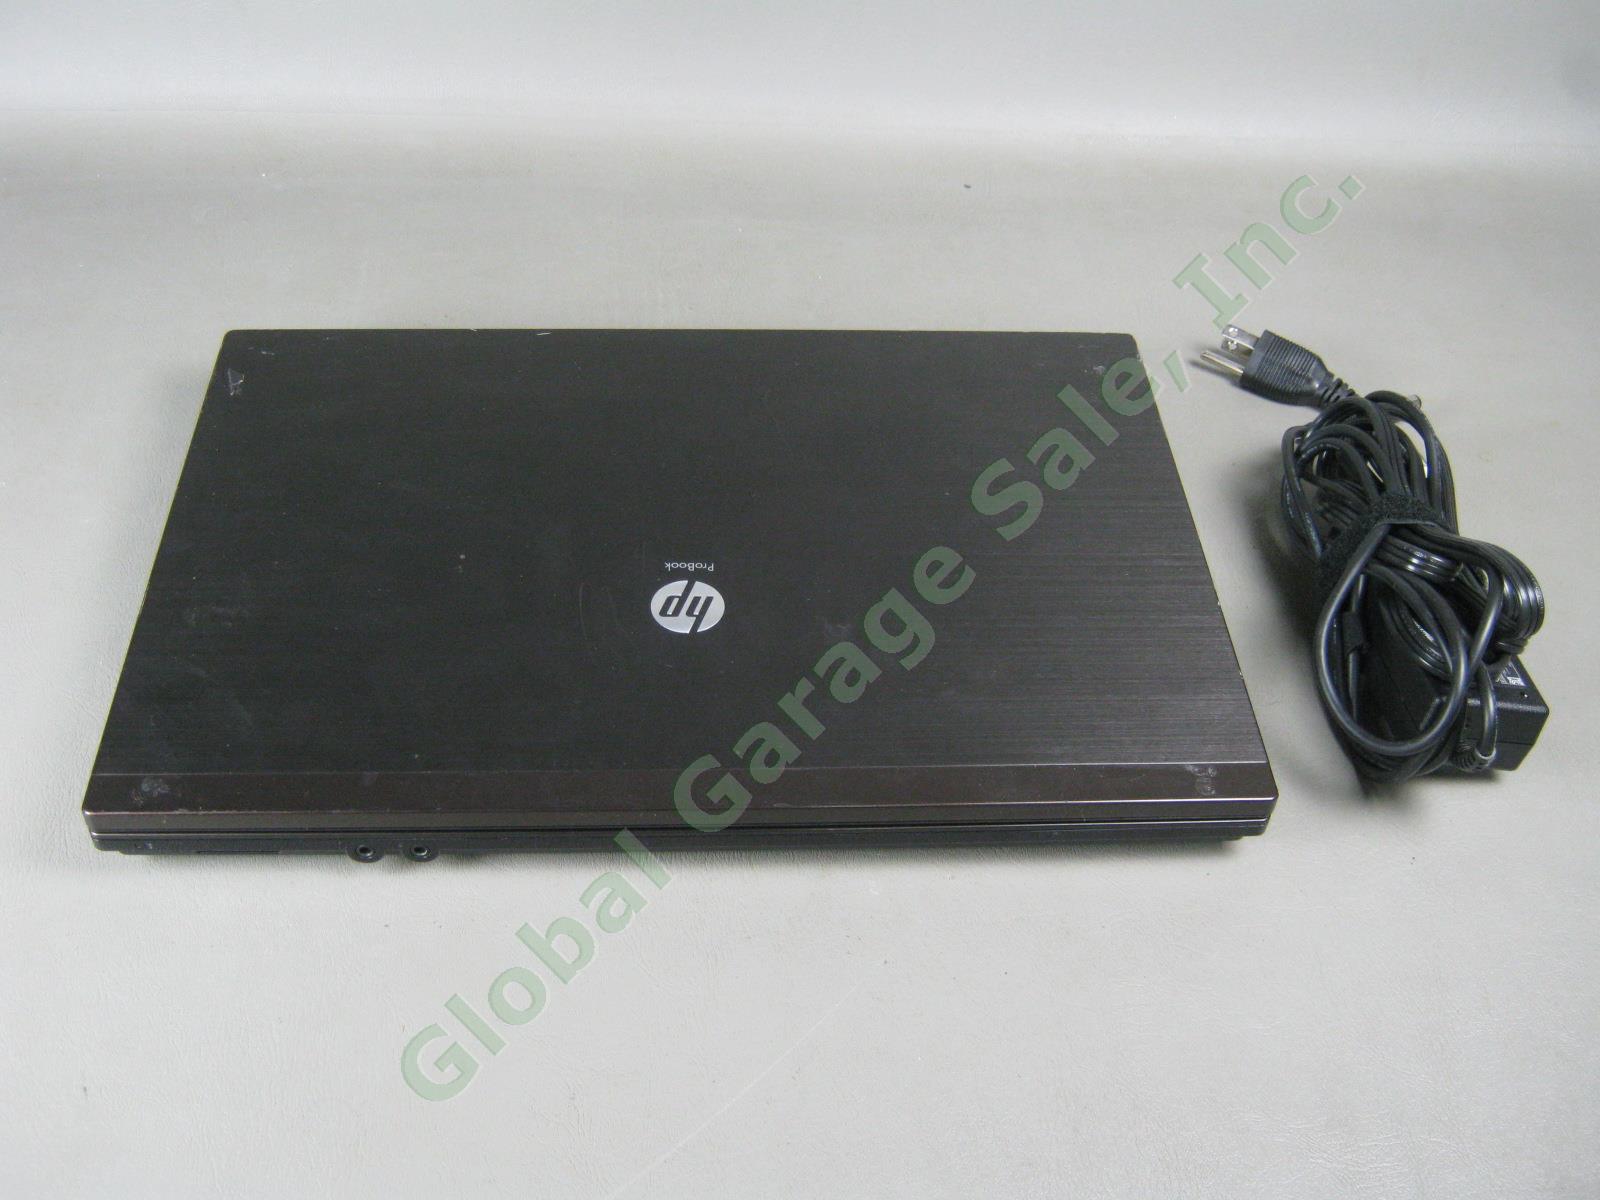 HP 4520s ProBook Laptop Intel Core i5 M520 2.40GHz 4GB 232GB DVDRW Windows 7 Pro 3